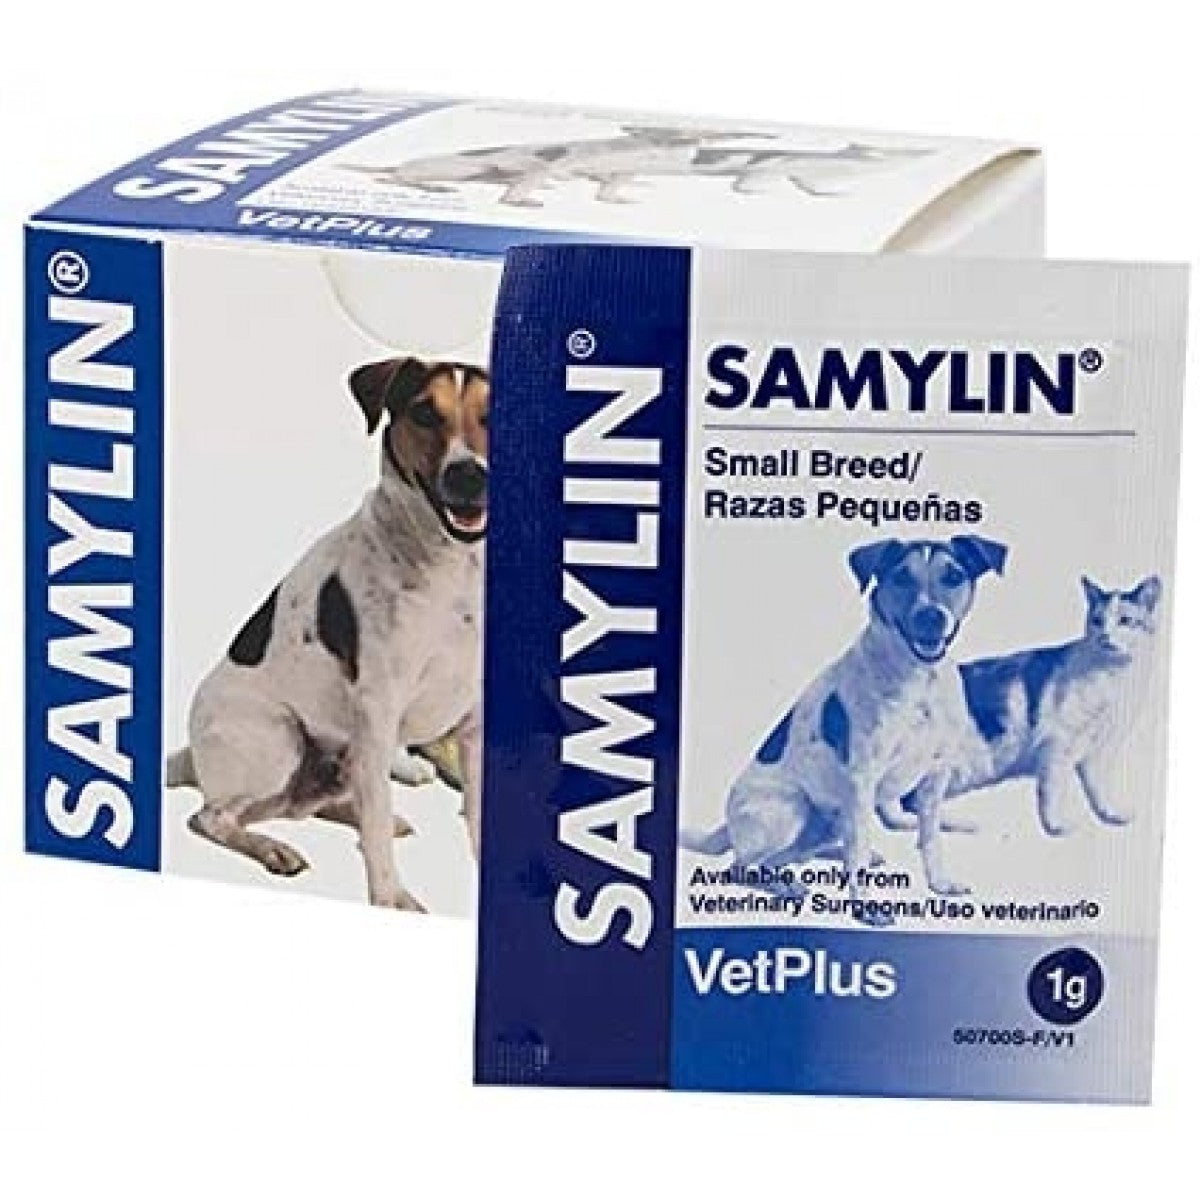 VetPlus - Samylin Sachet (Liver Supplement for Small Dogs & Cats) 1g Sachets x 30 packs